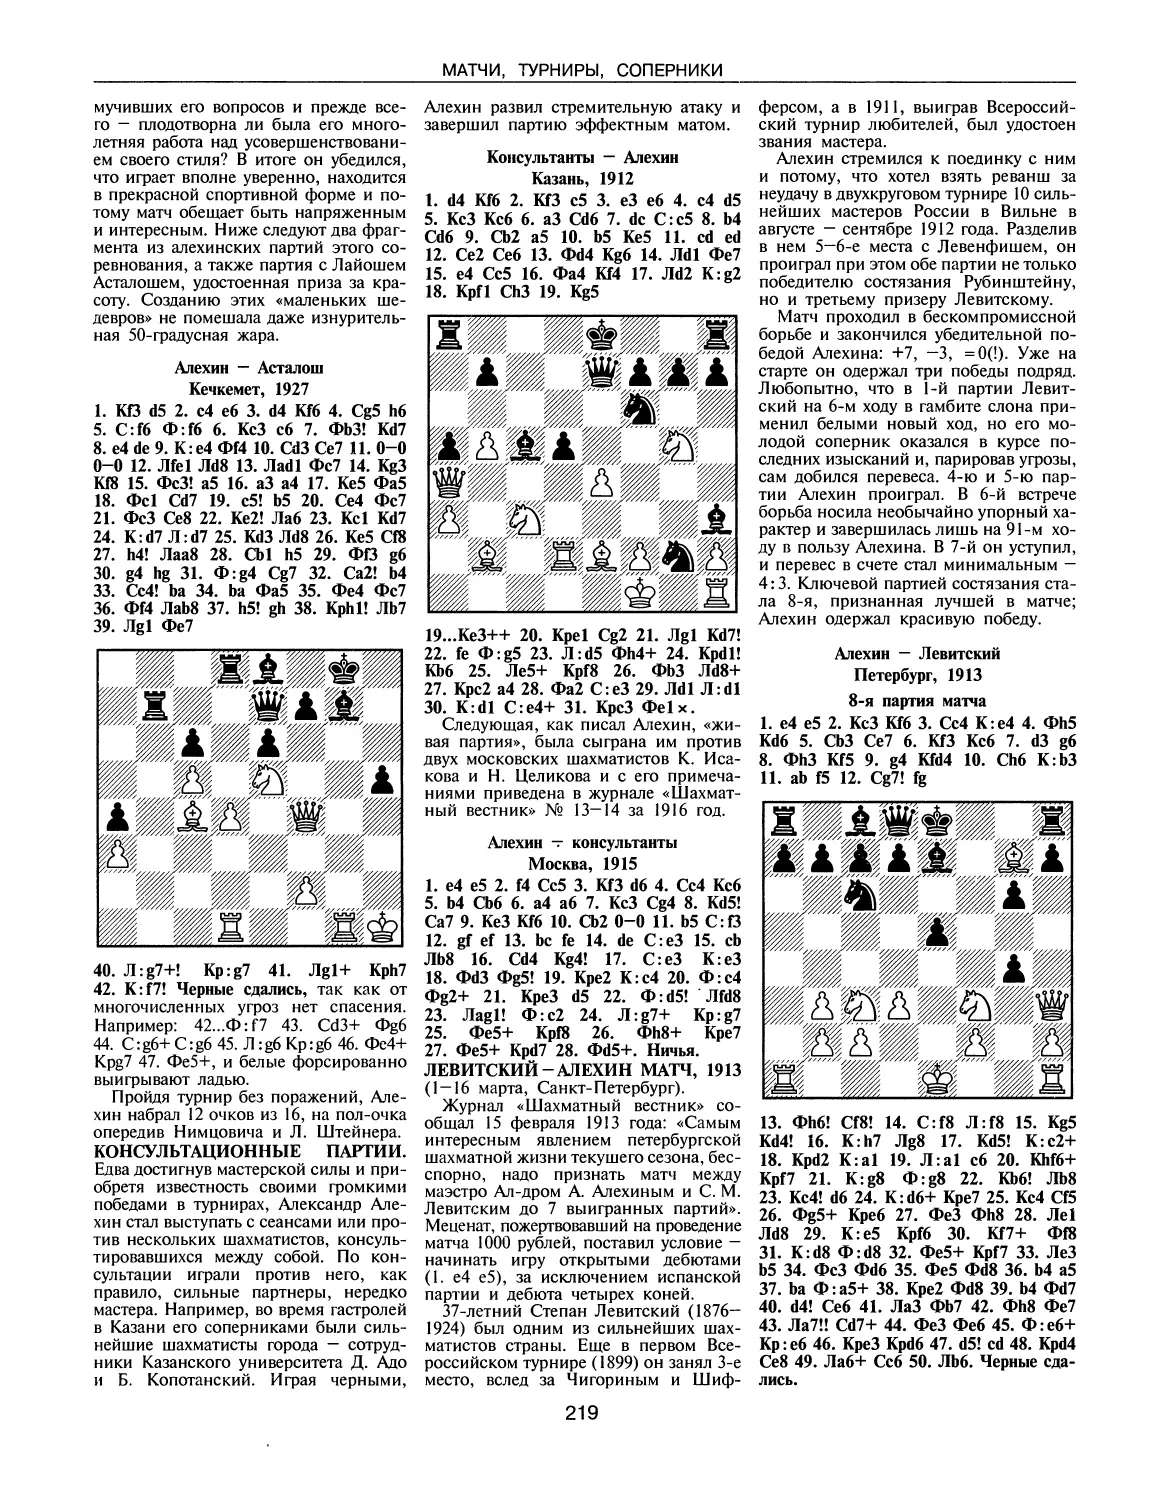 Консультационные партии
Левитский — Алехин матч, 1913